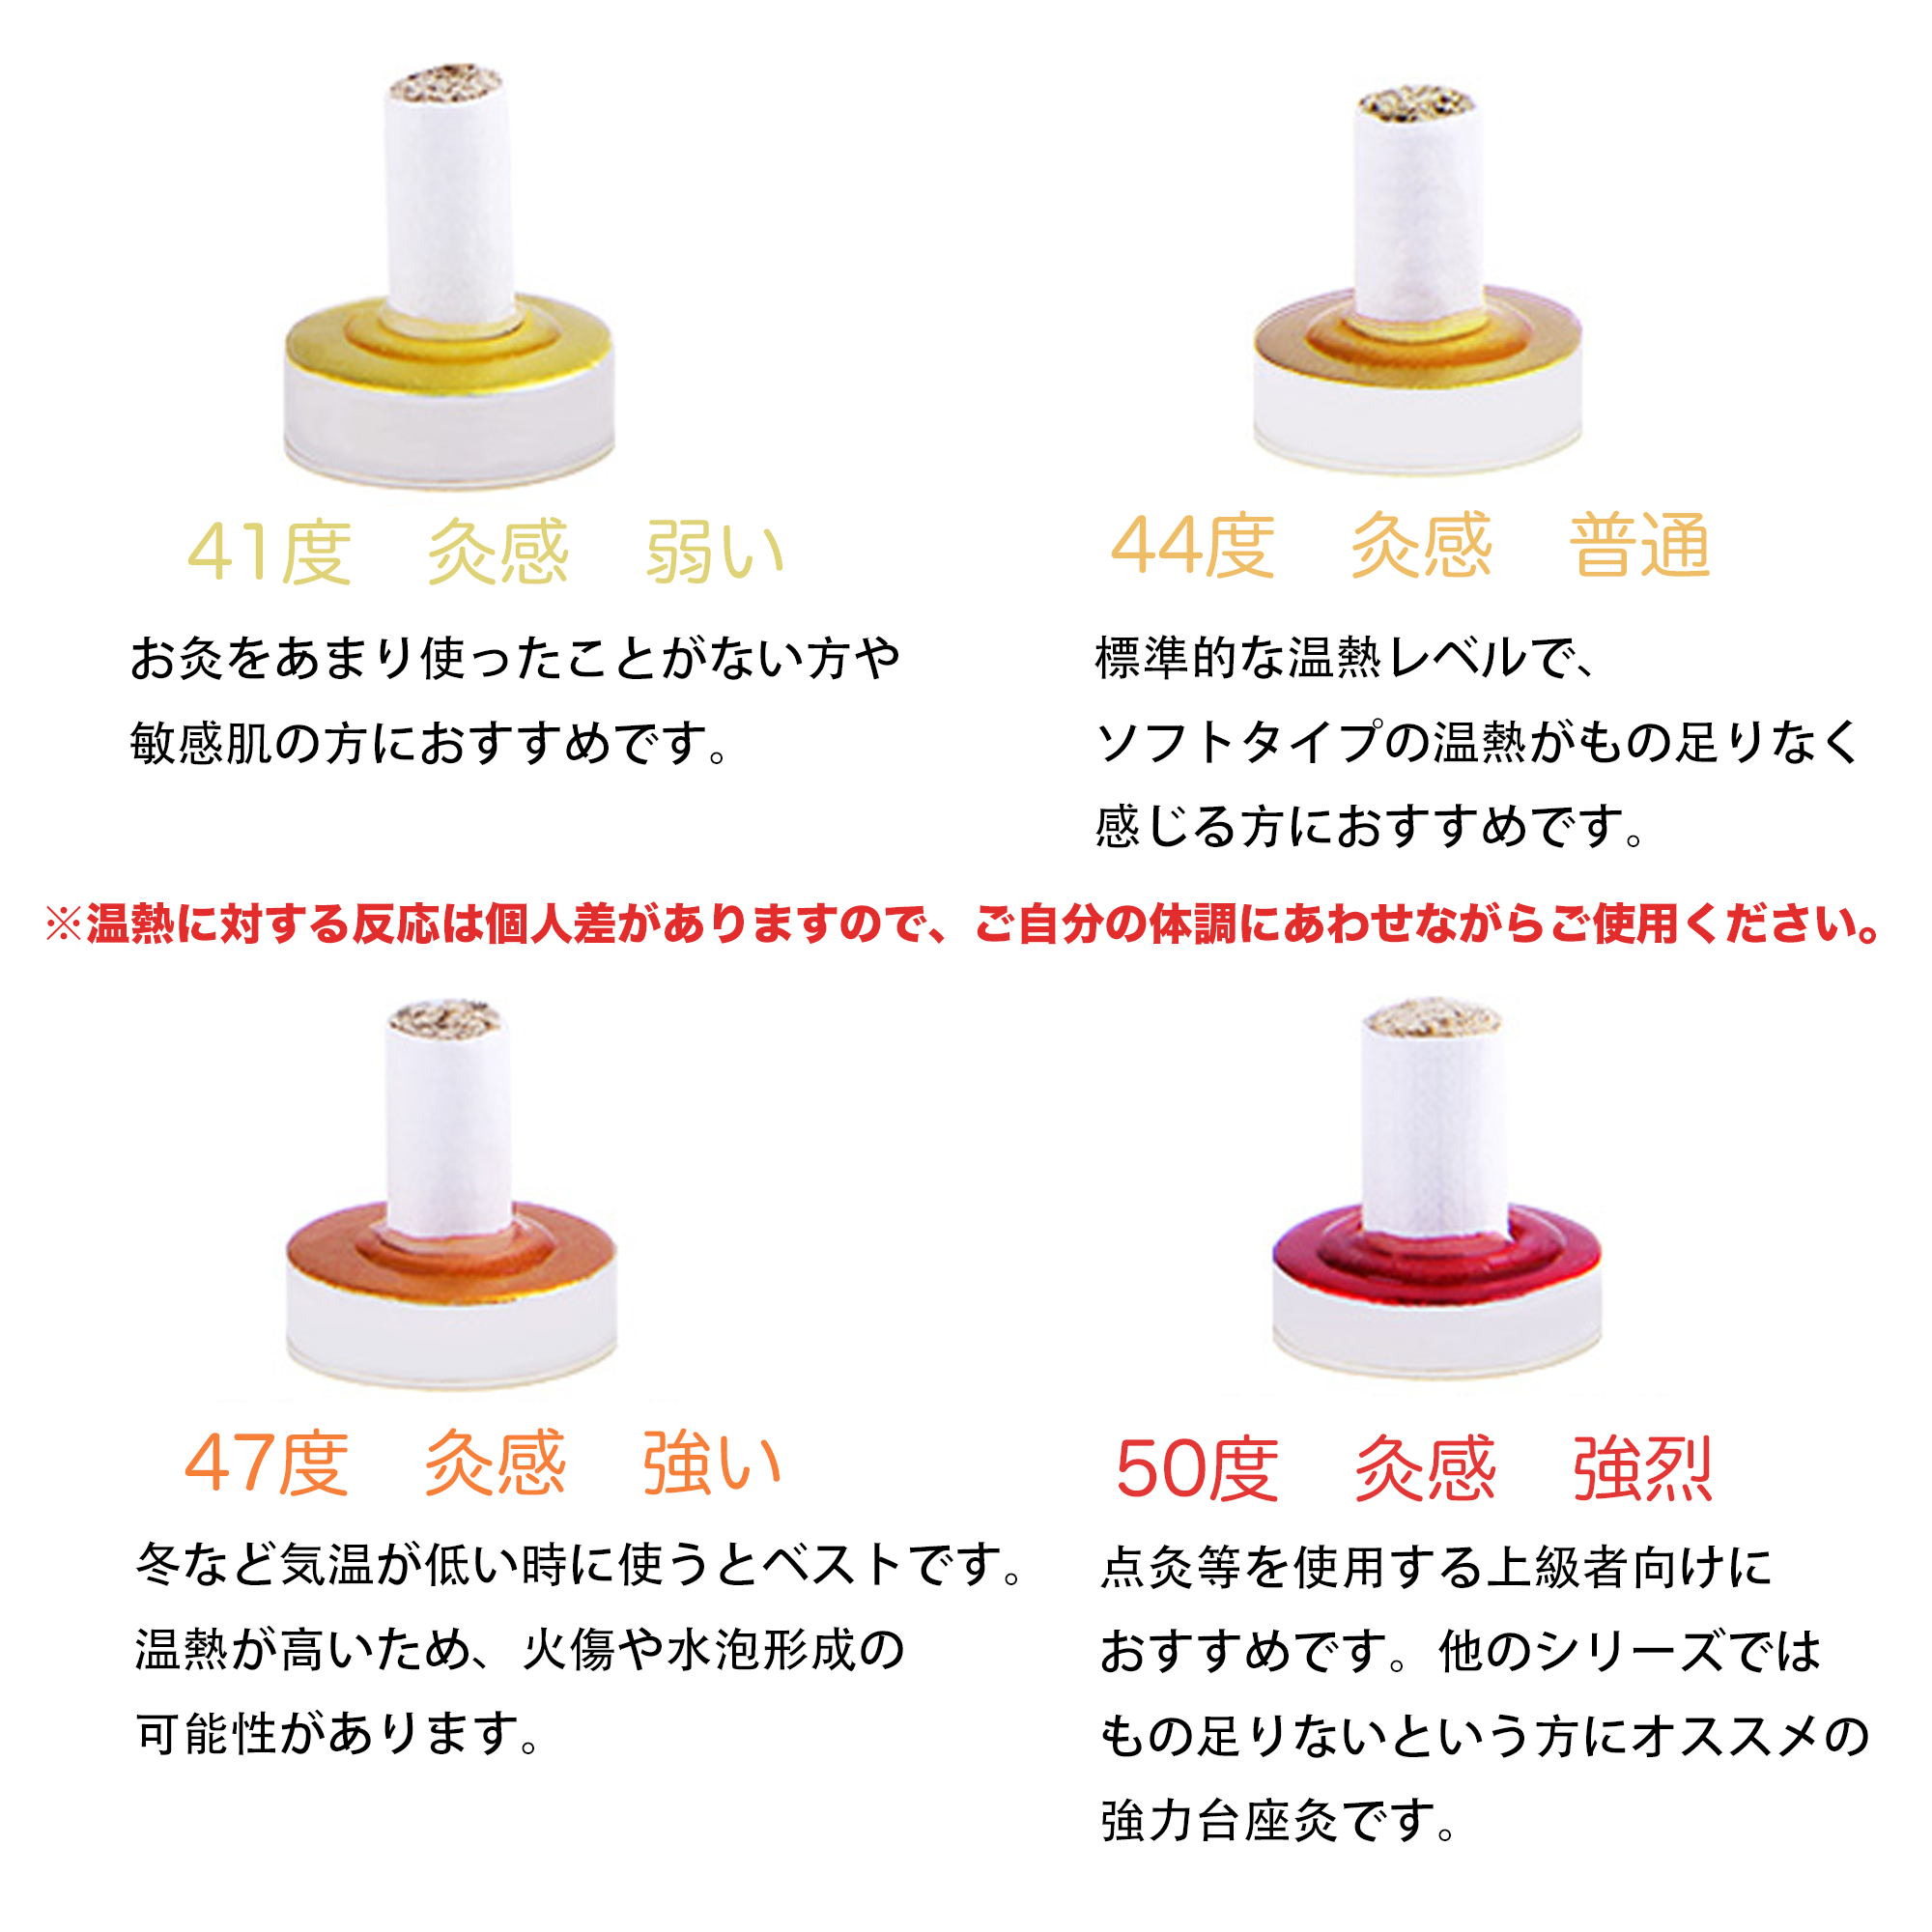 製品ラインナップ - アイクレイ灸 - AIKUREI MOXA